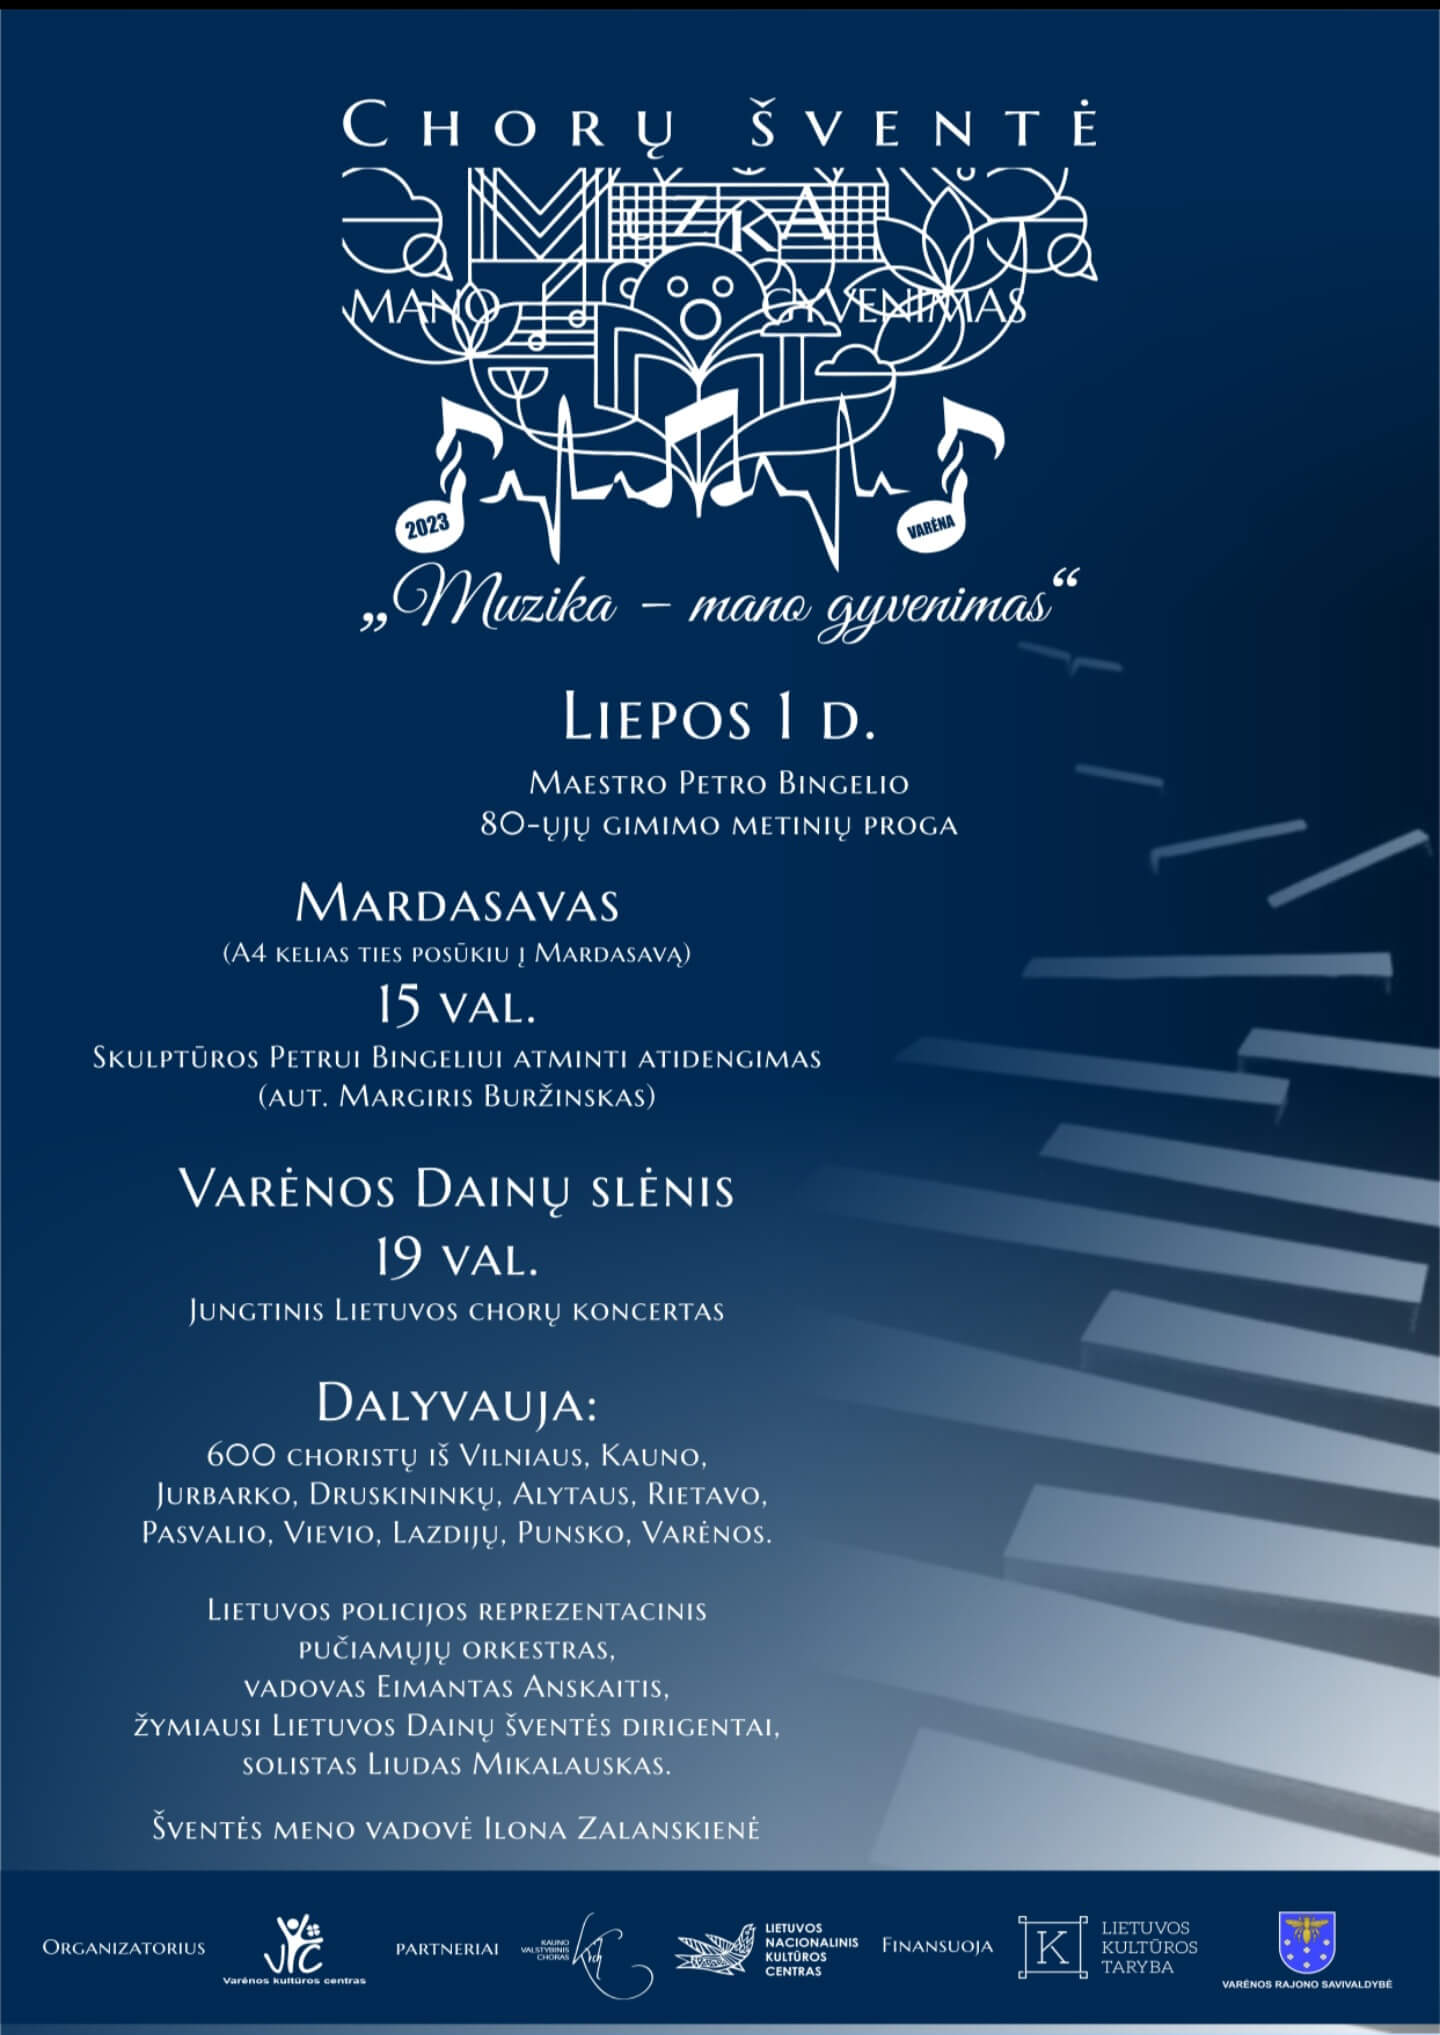 Kviečiame į chorų šventę Varėnos Dainų slėnyje, skirtą Maestro Petro Bingelio 80-osioms gimimo metinėms ,,Muzika – mano gyvenimas“